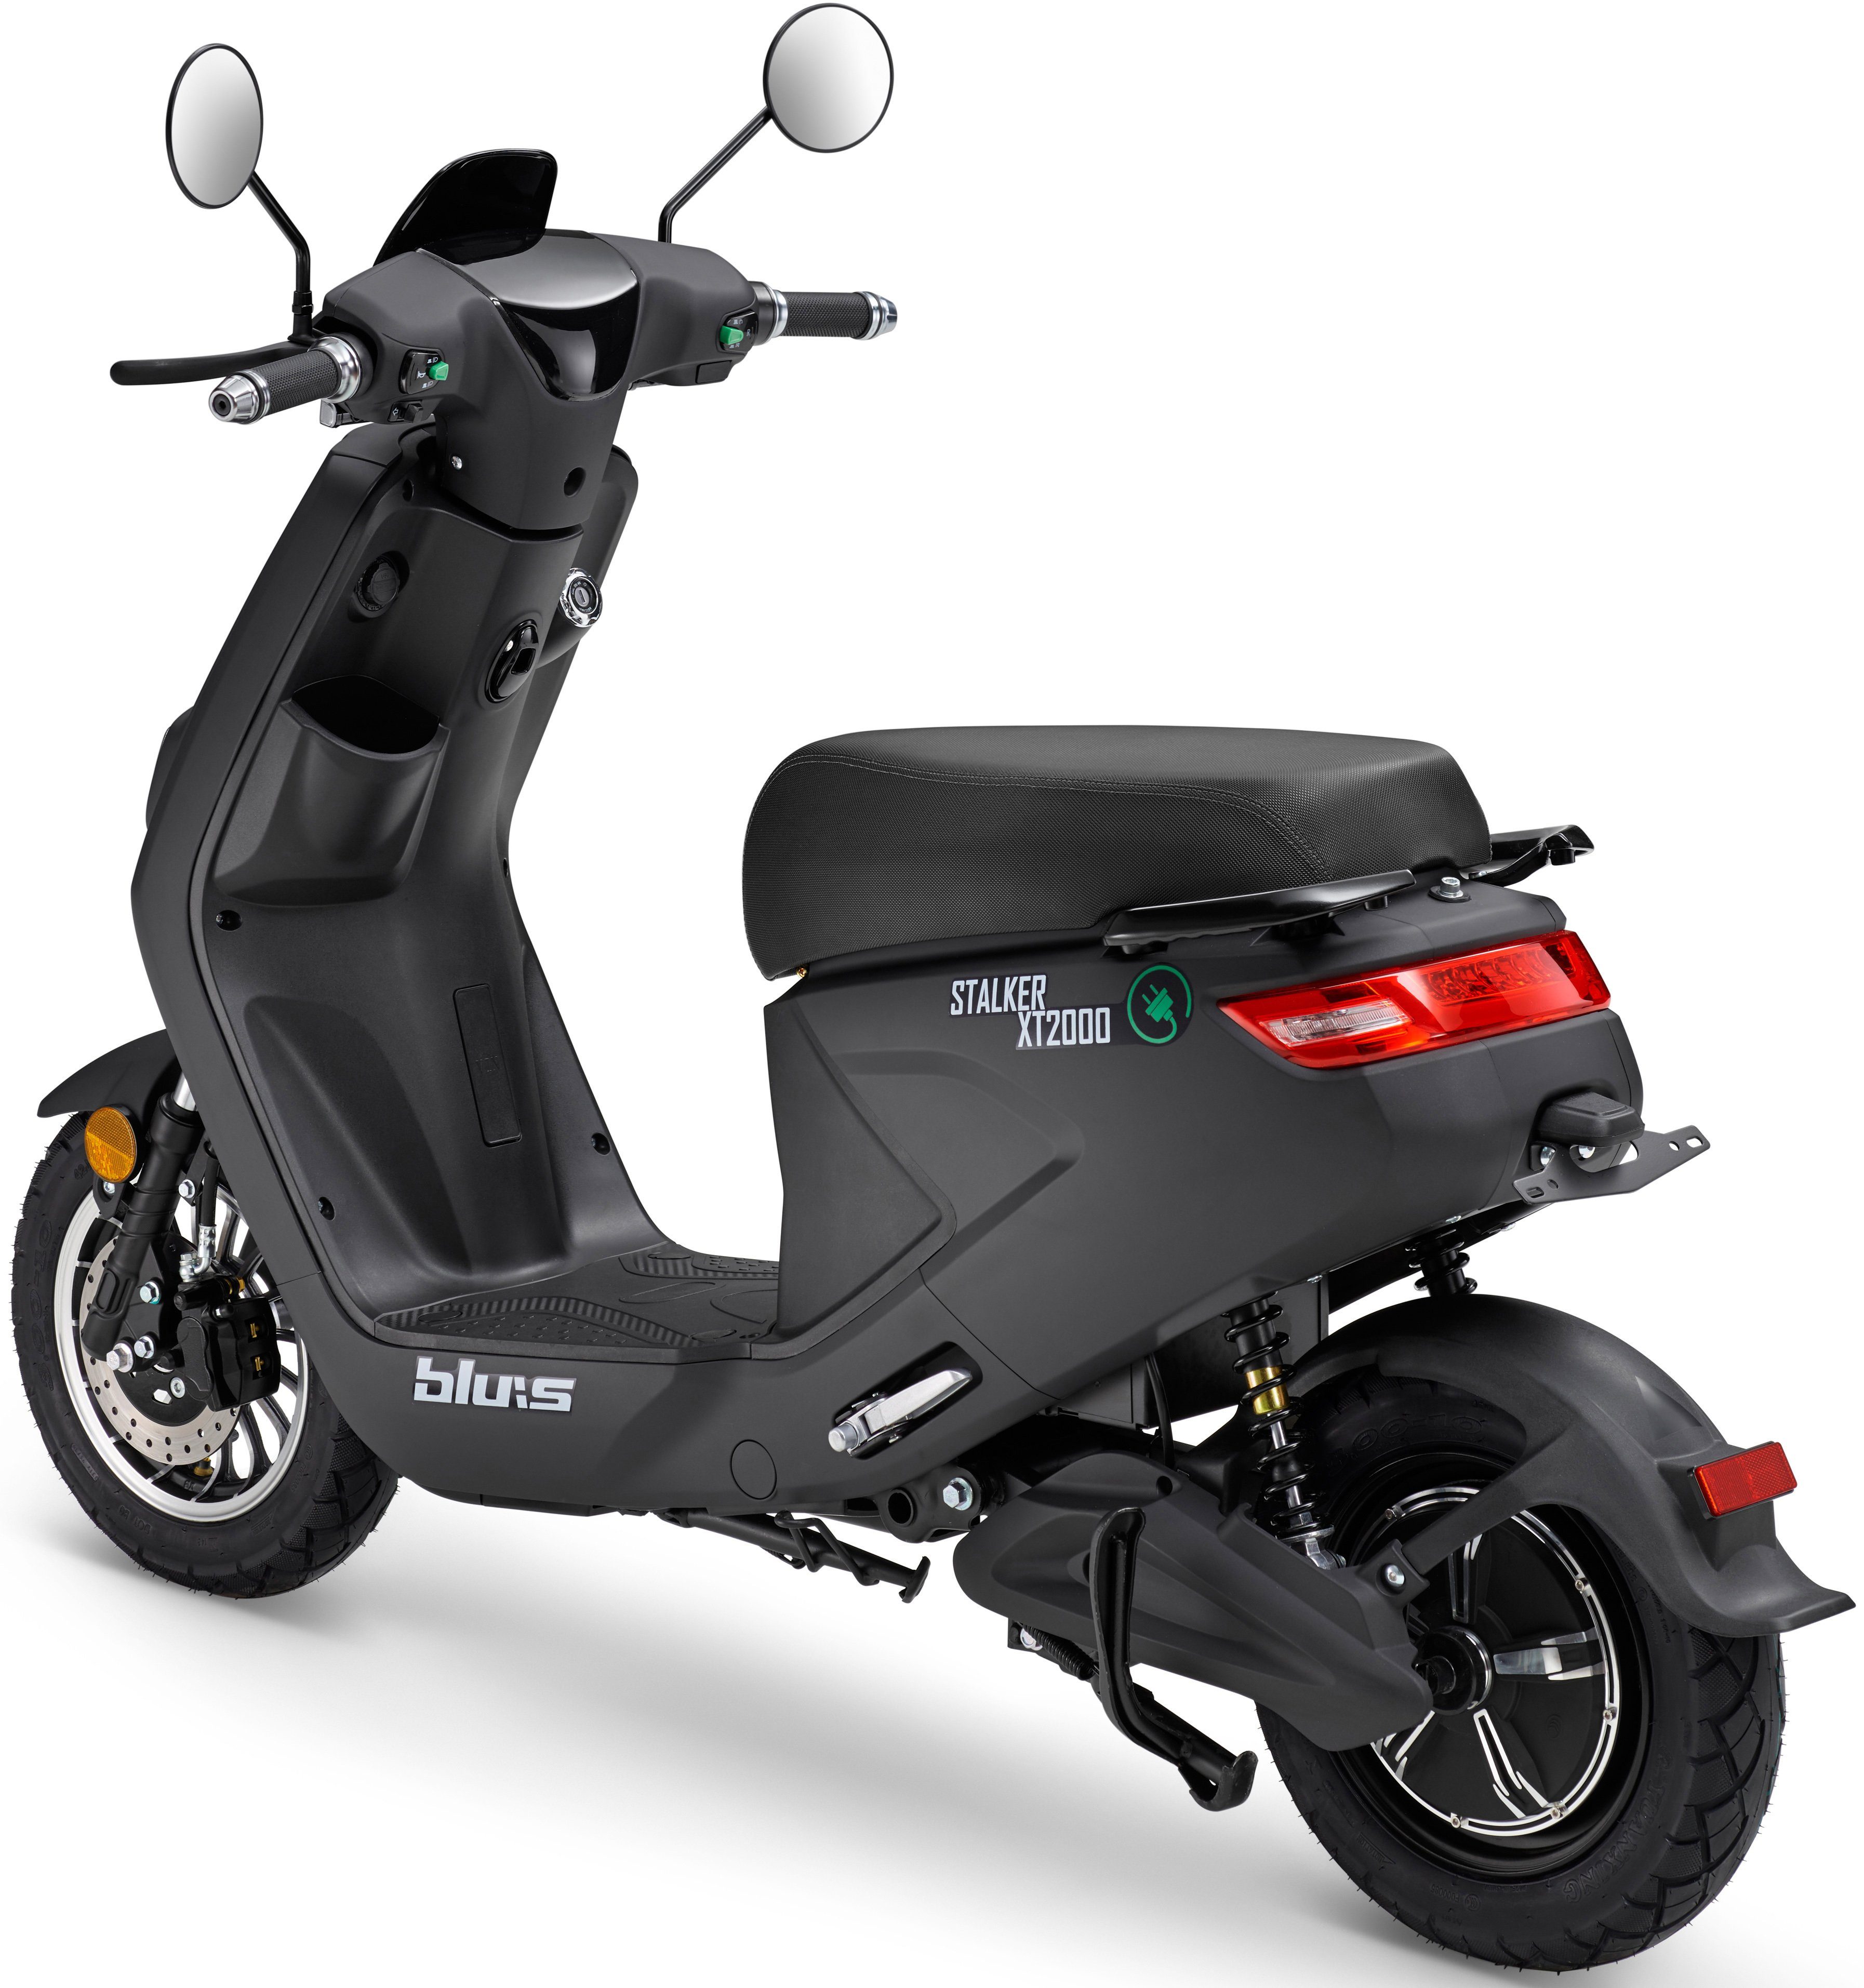 Blu:s E-Motorroller XT2000, W, 45 schwarz 2000 km/h